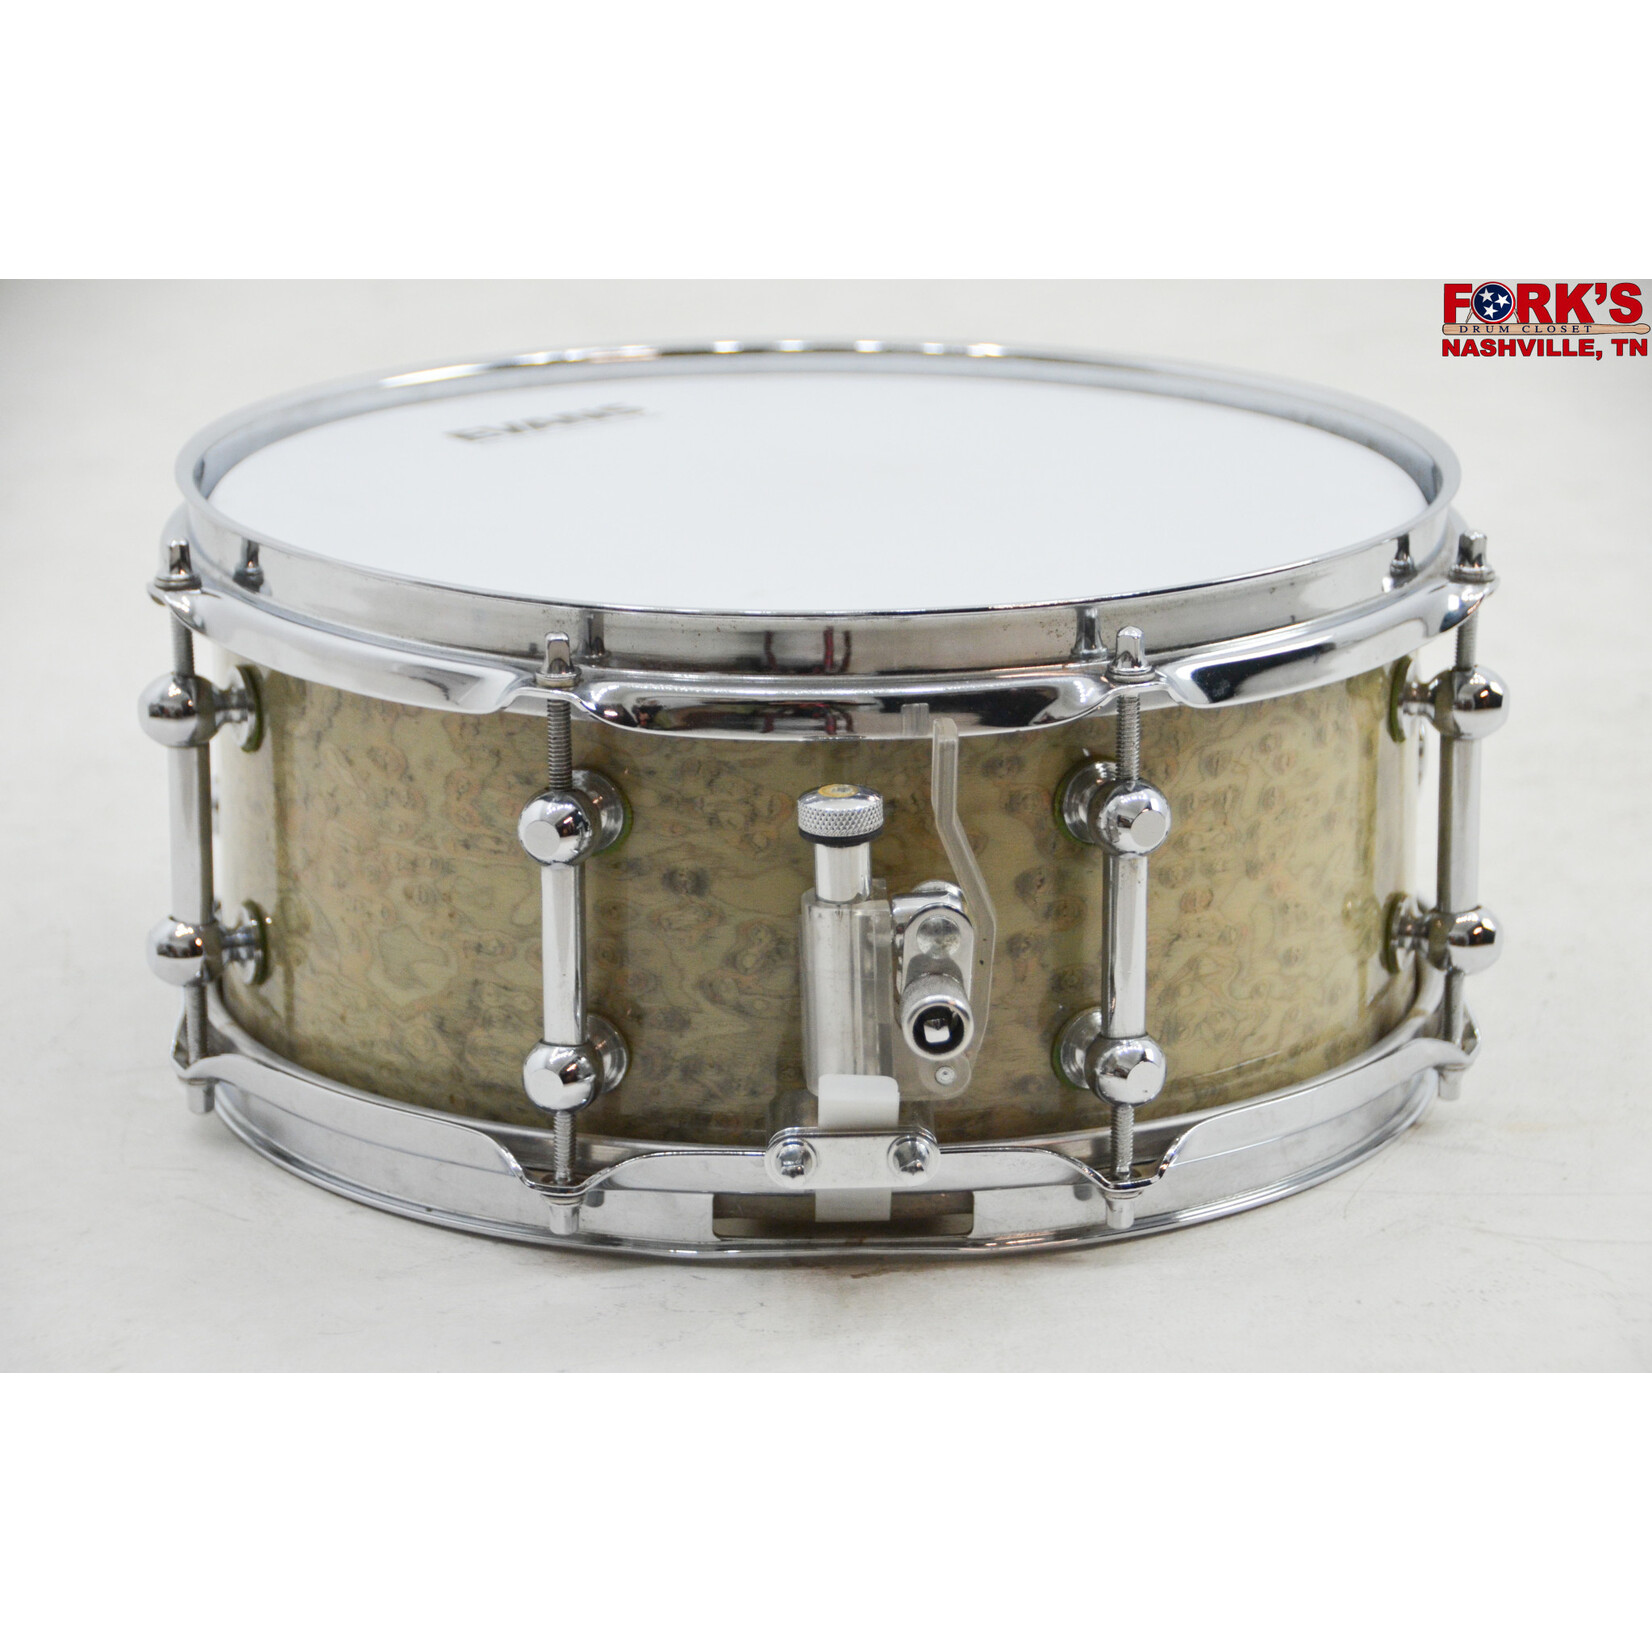 Brady Brady 5x12 Jarrah Ply Snare Drum - "Silver Gimlet"